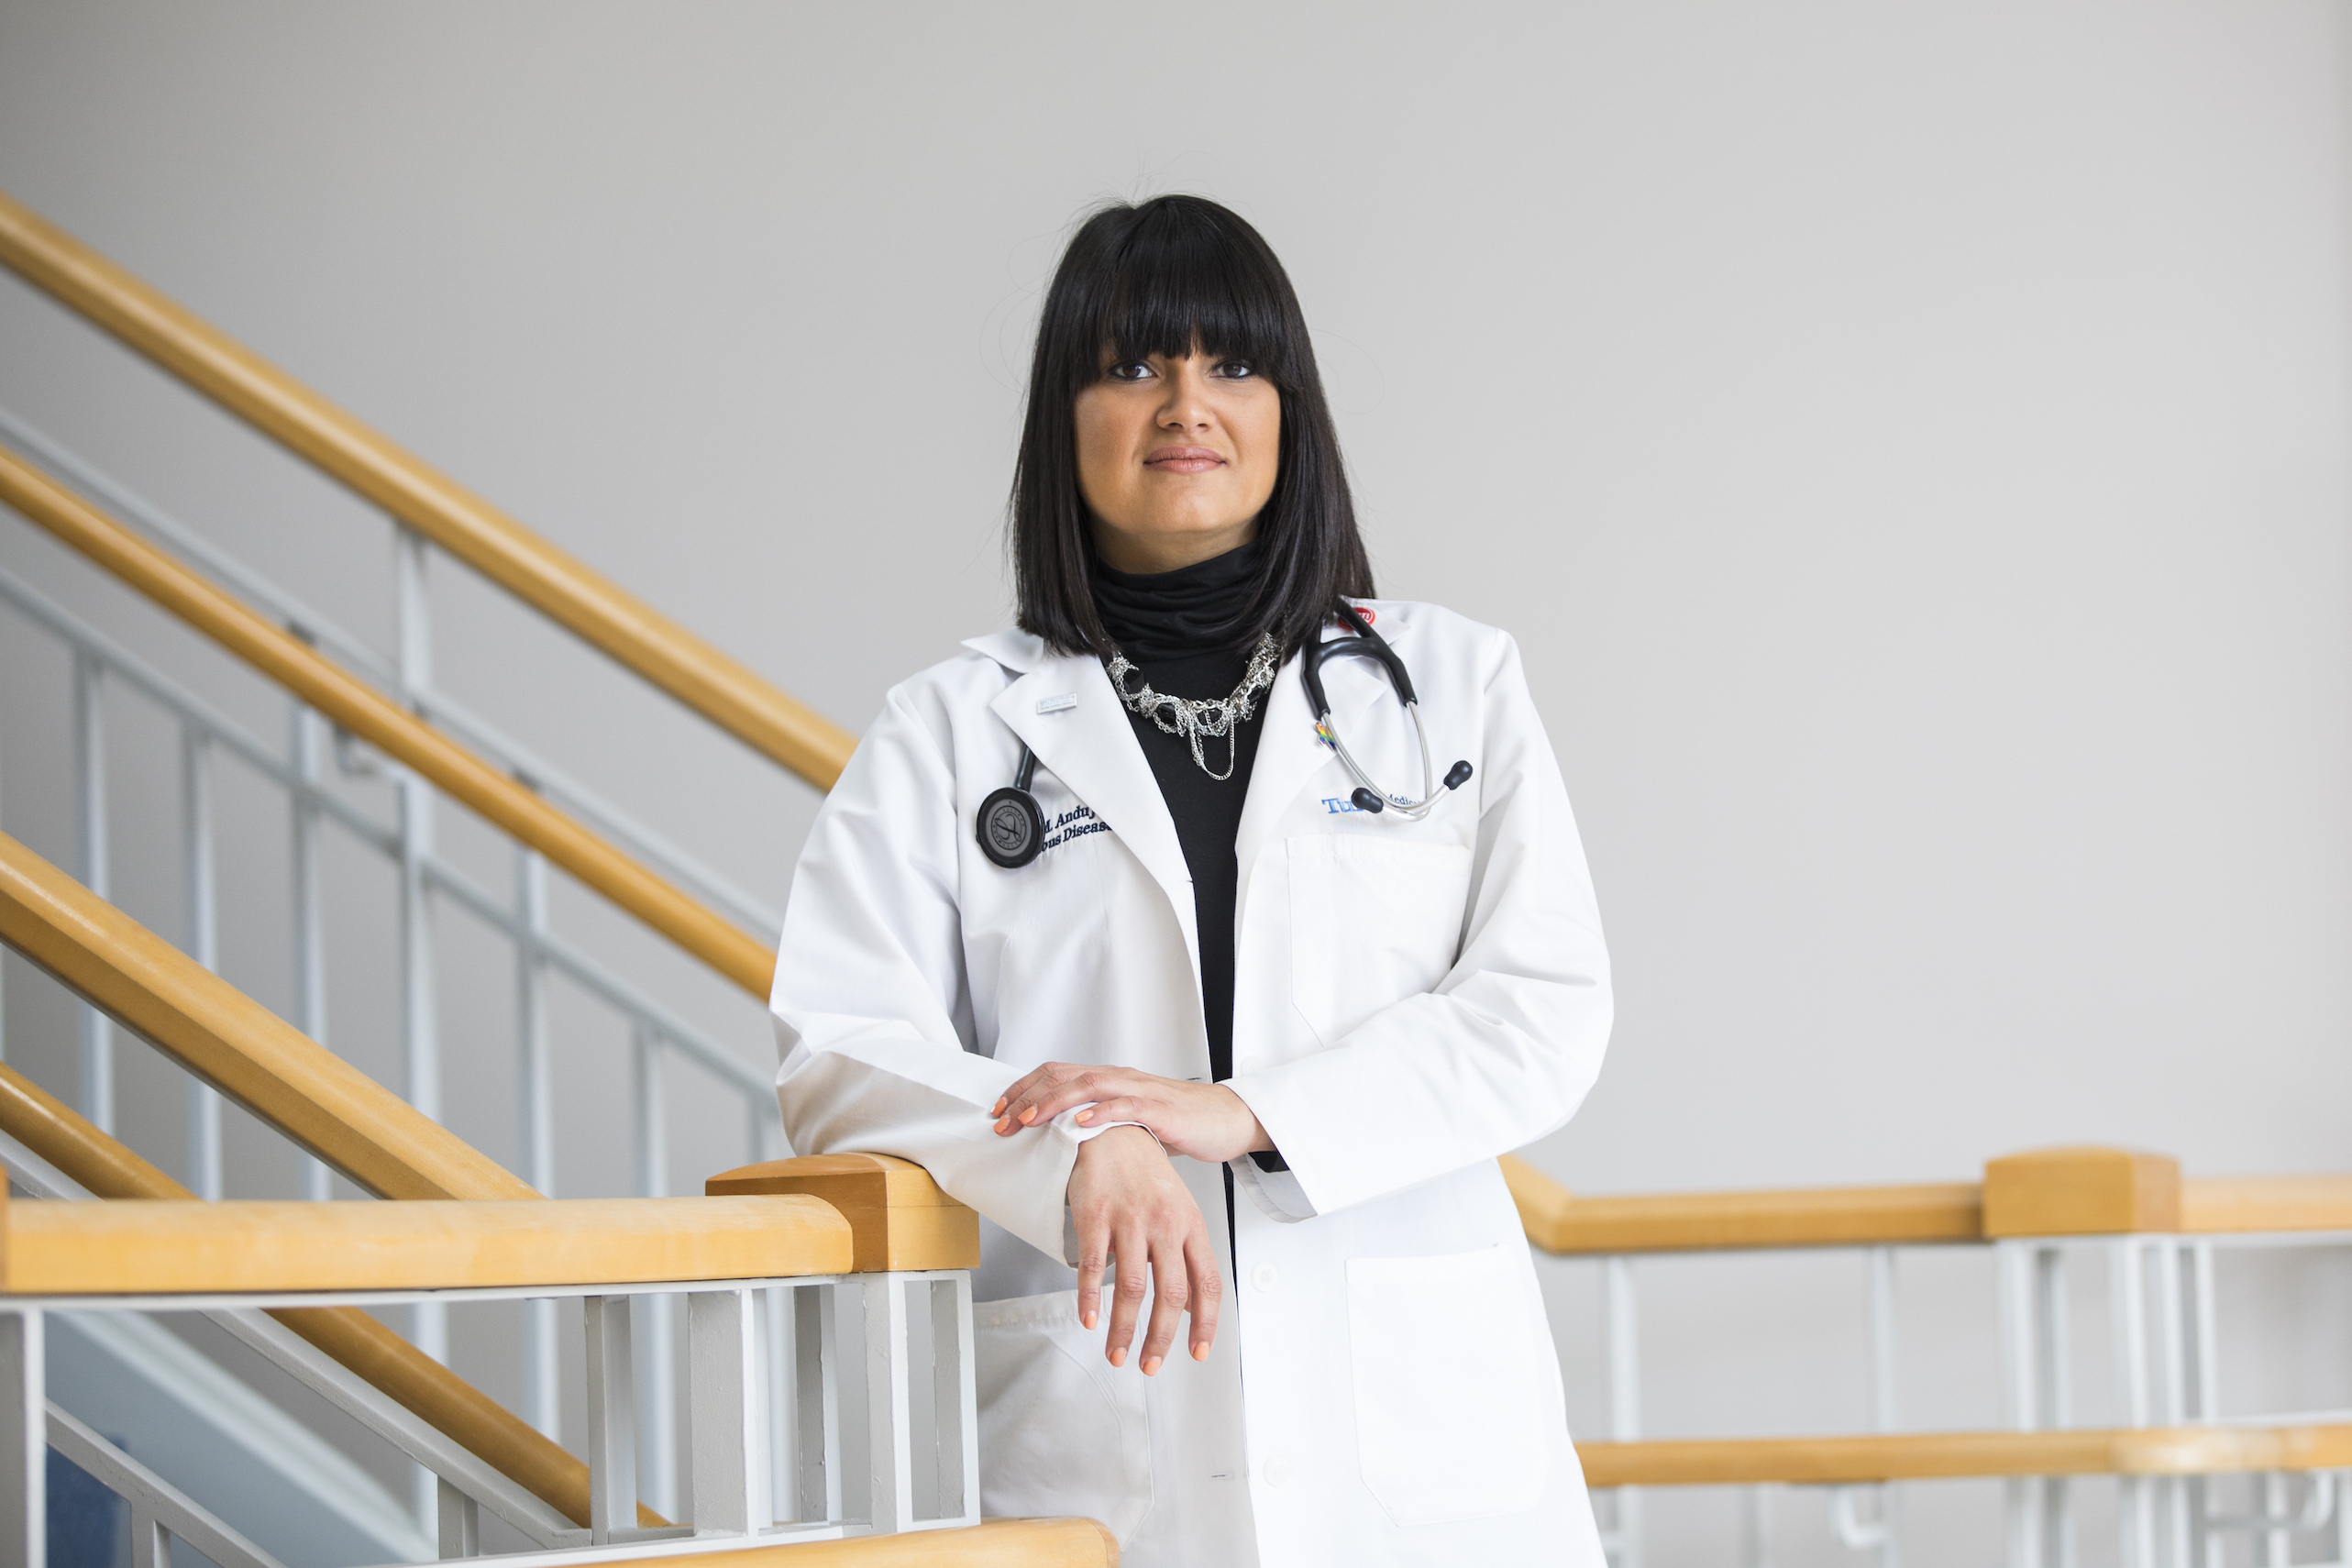 Dr. Daniela Andujar Vasquez